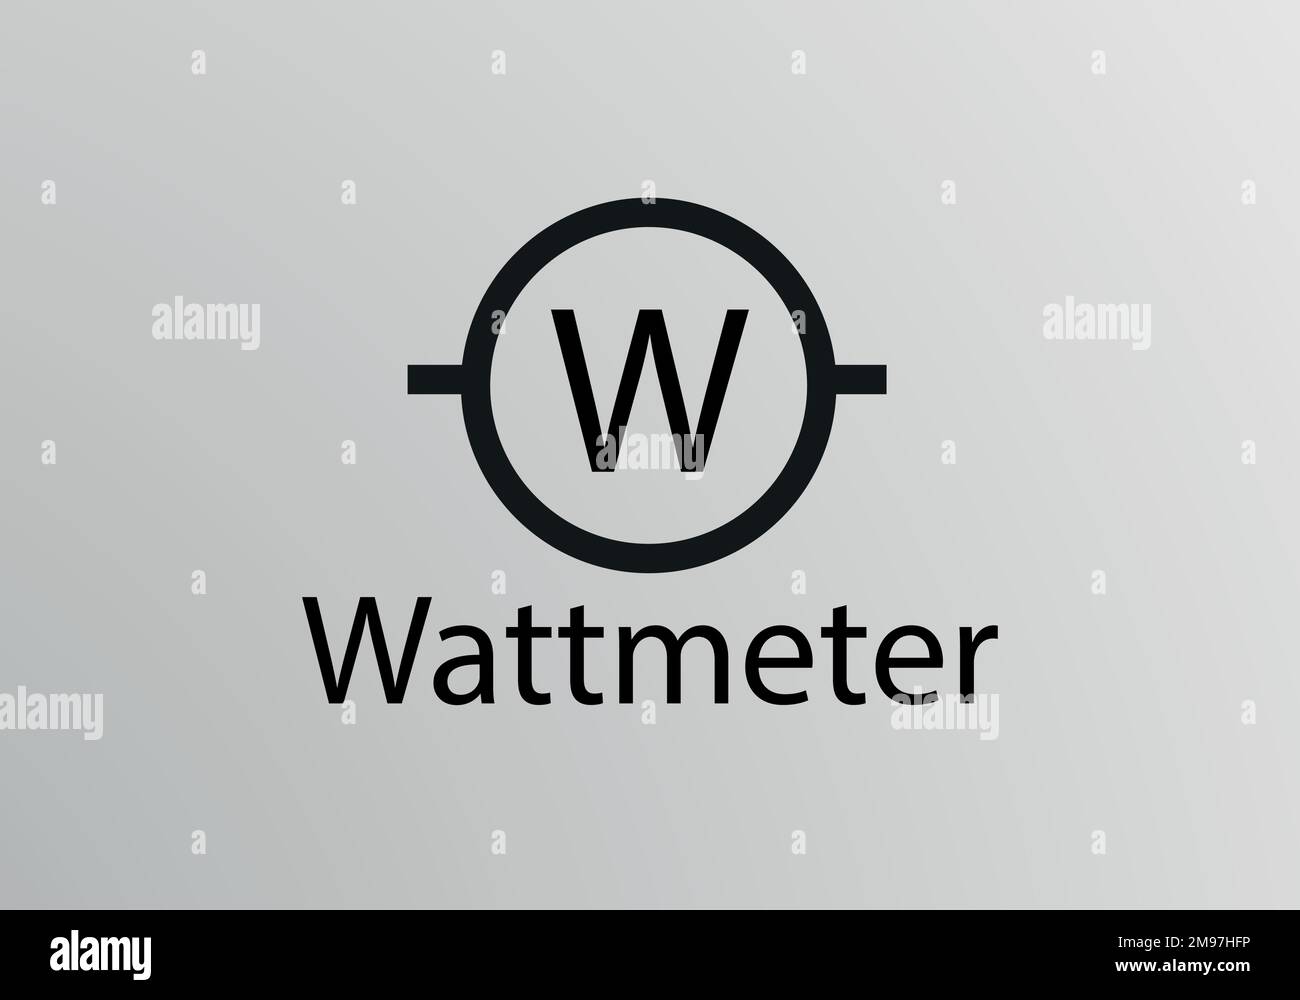 Wattmetter Symbol, Vector symbol design. Engineering Symbols. Stock Vector